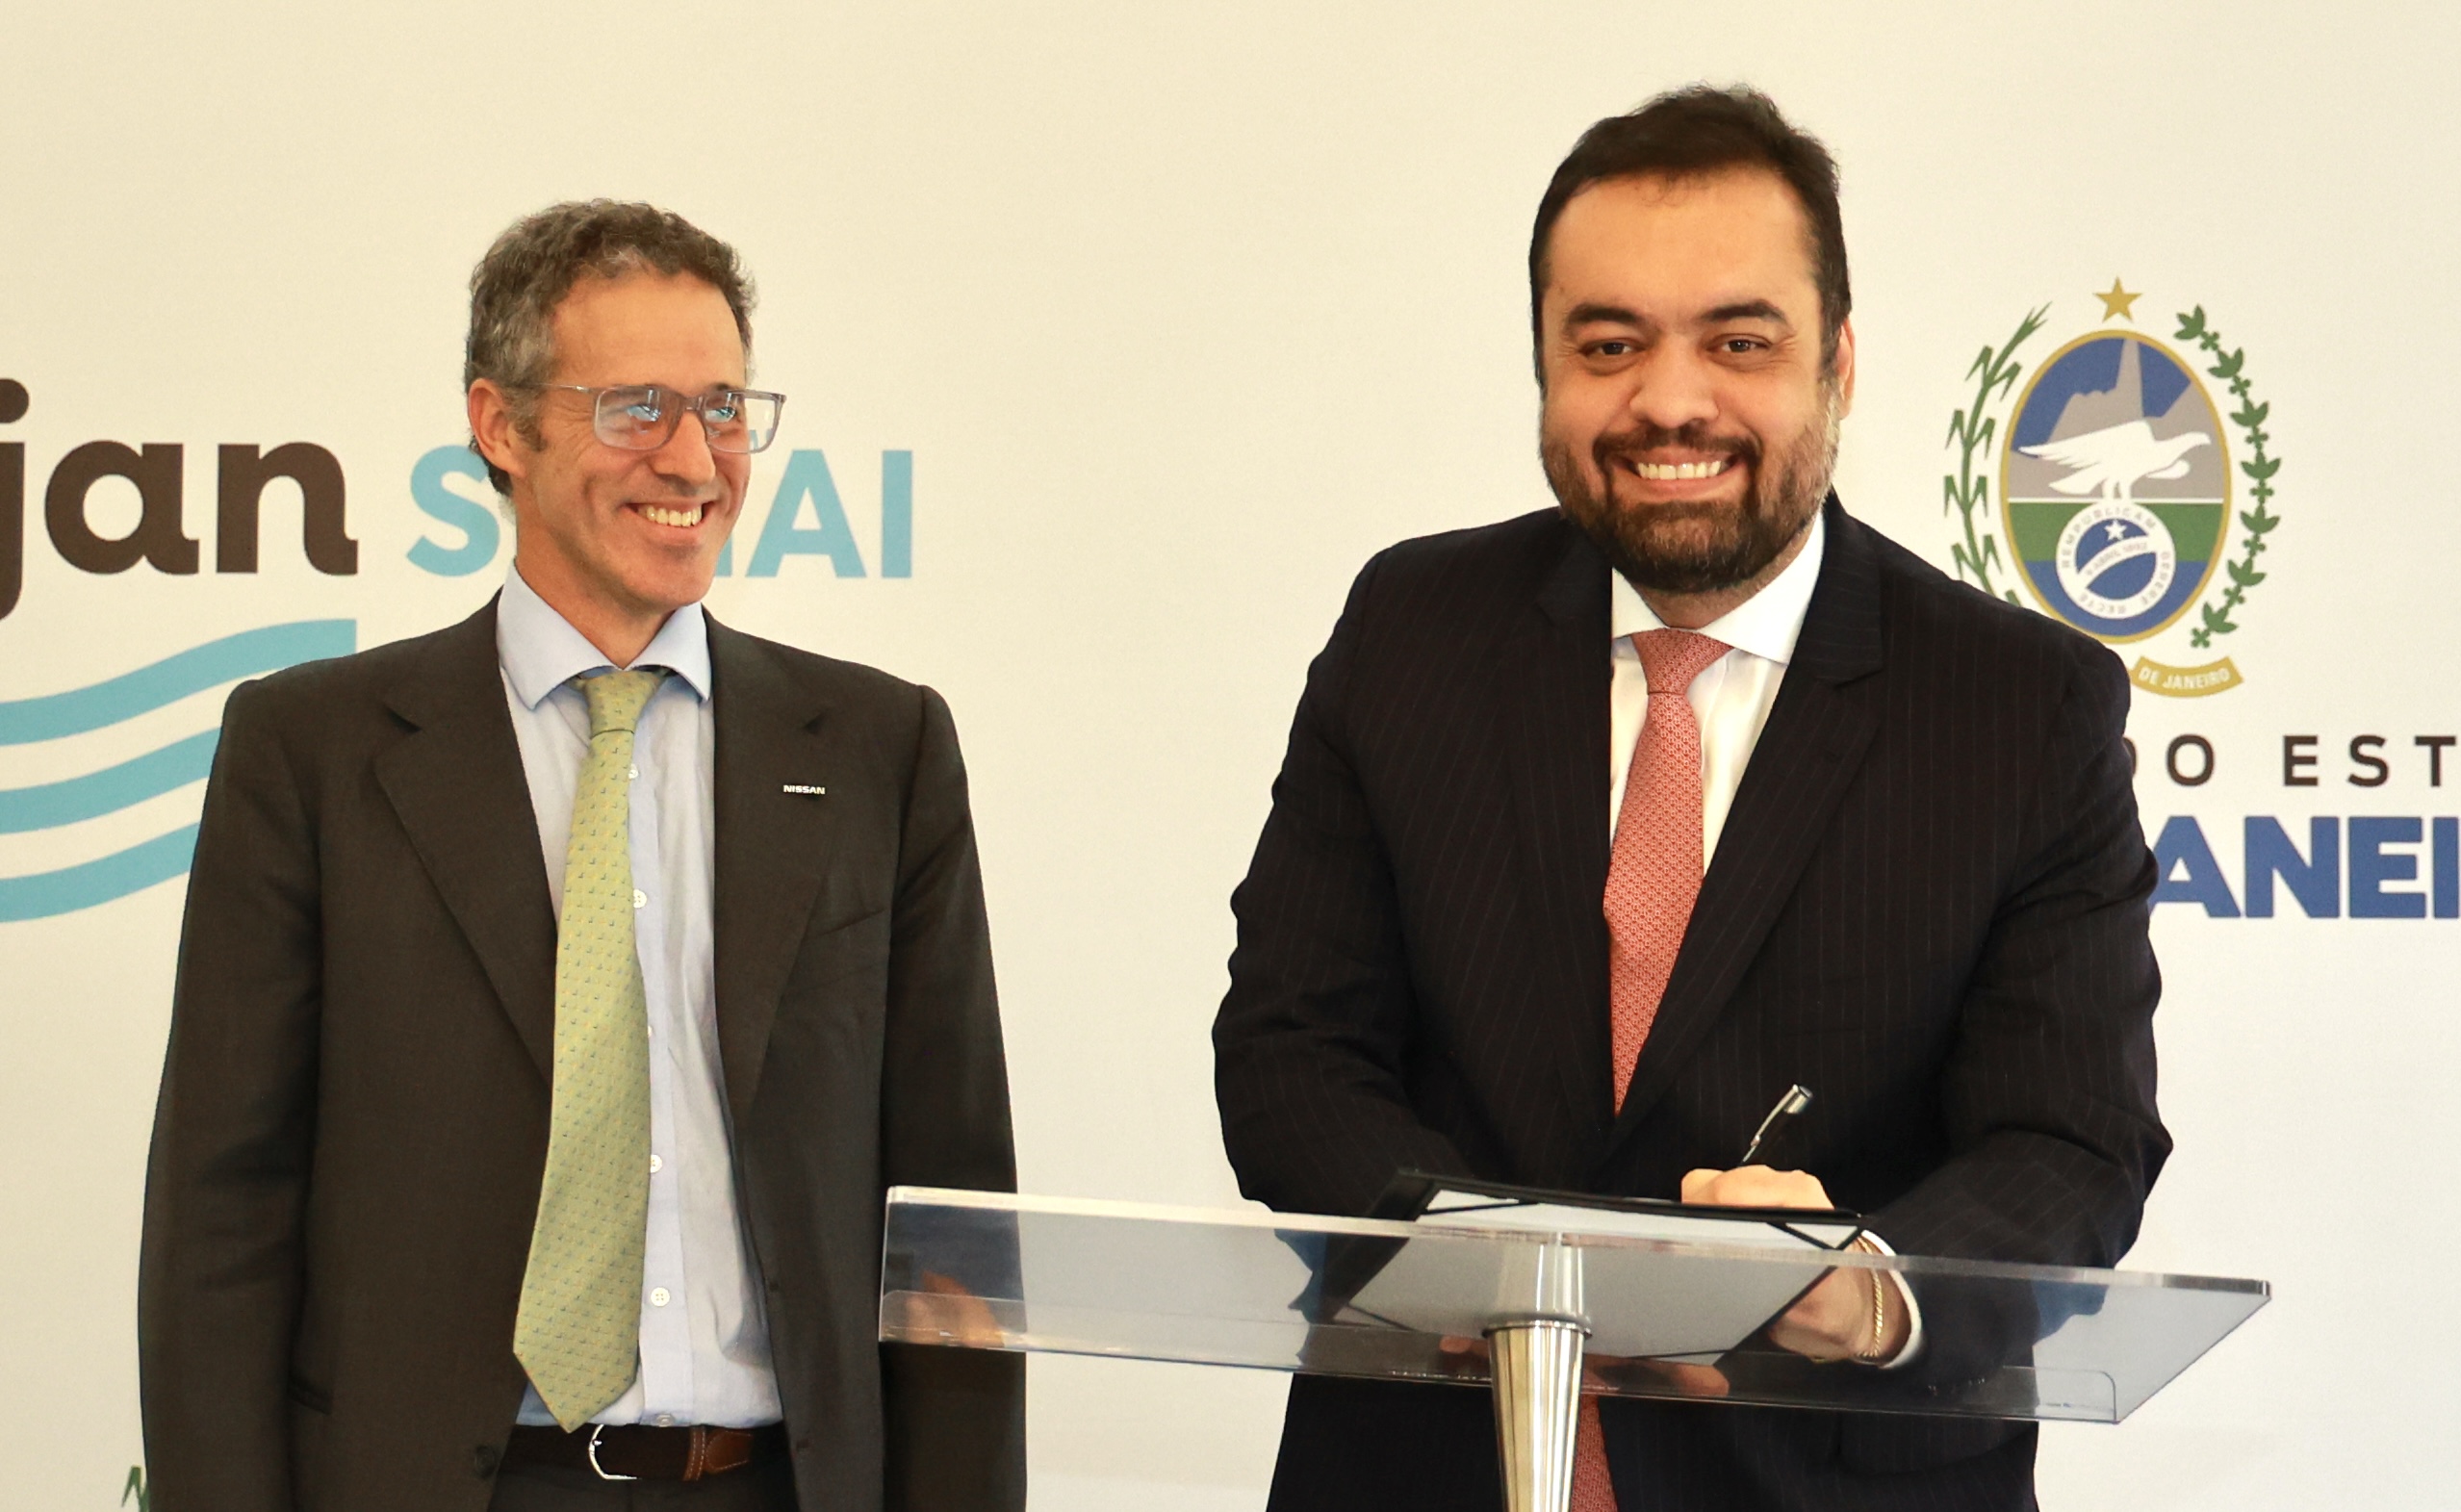 Governador assina parceria com Nissan para investimentos em curso profissionalizante em Itatiaia